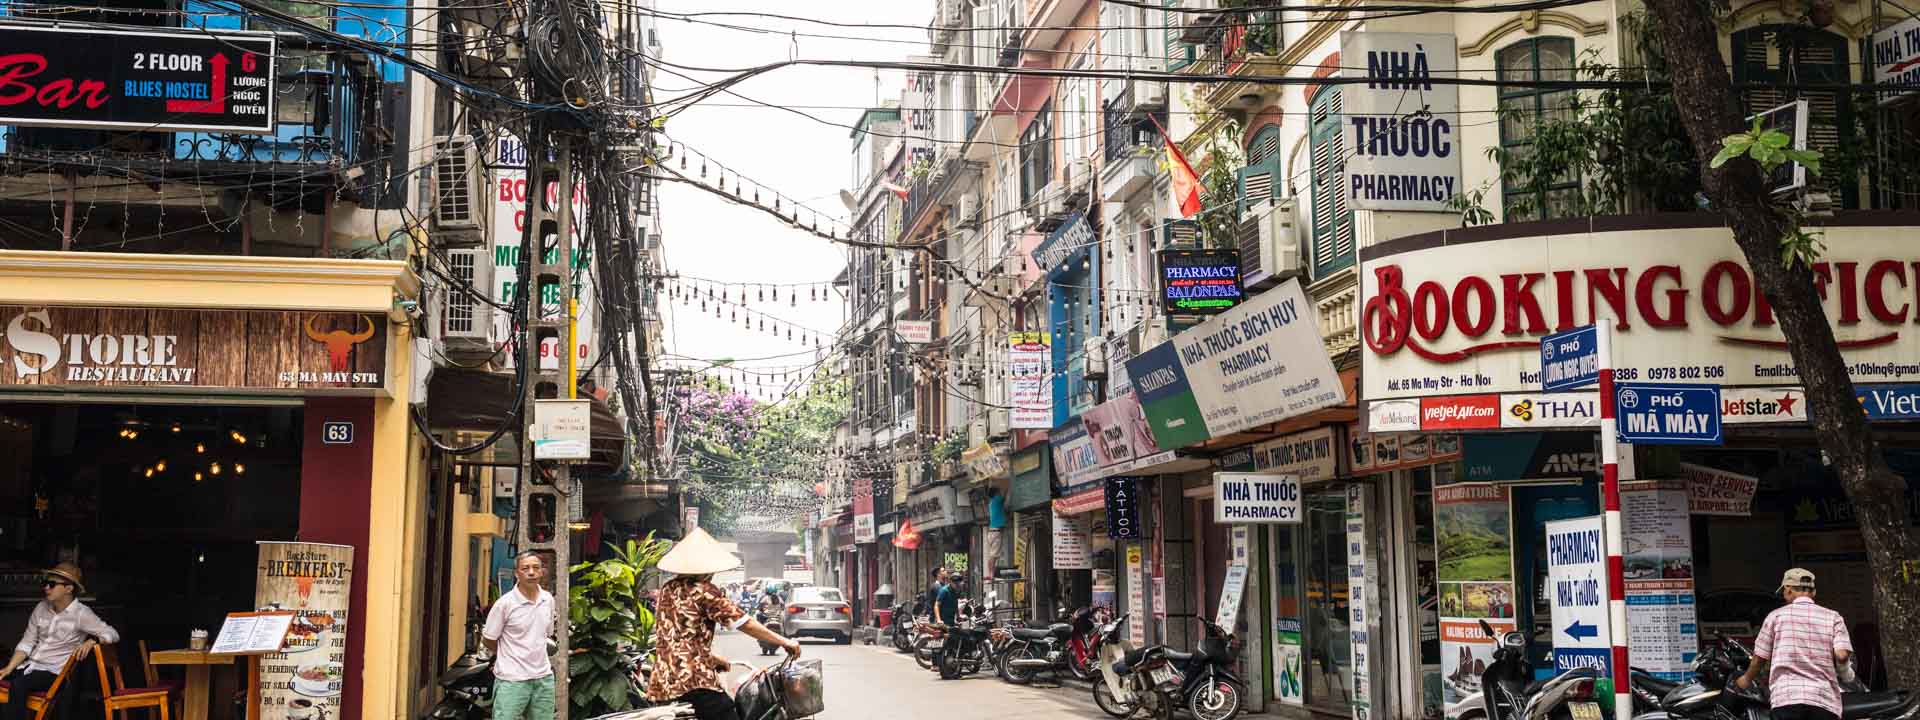 Historia de Hanoi